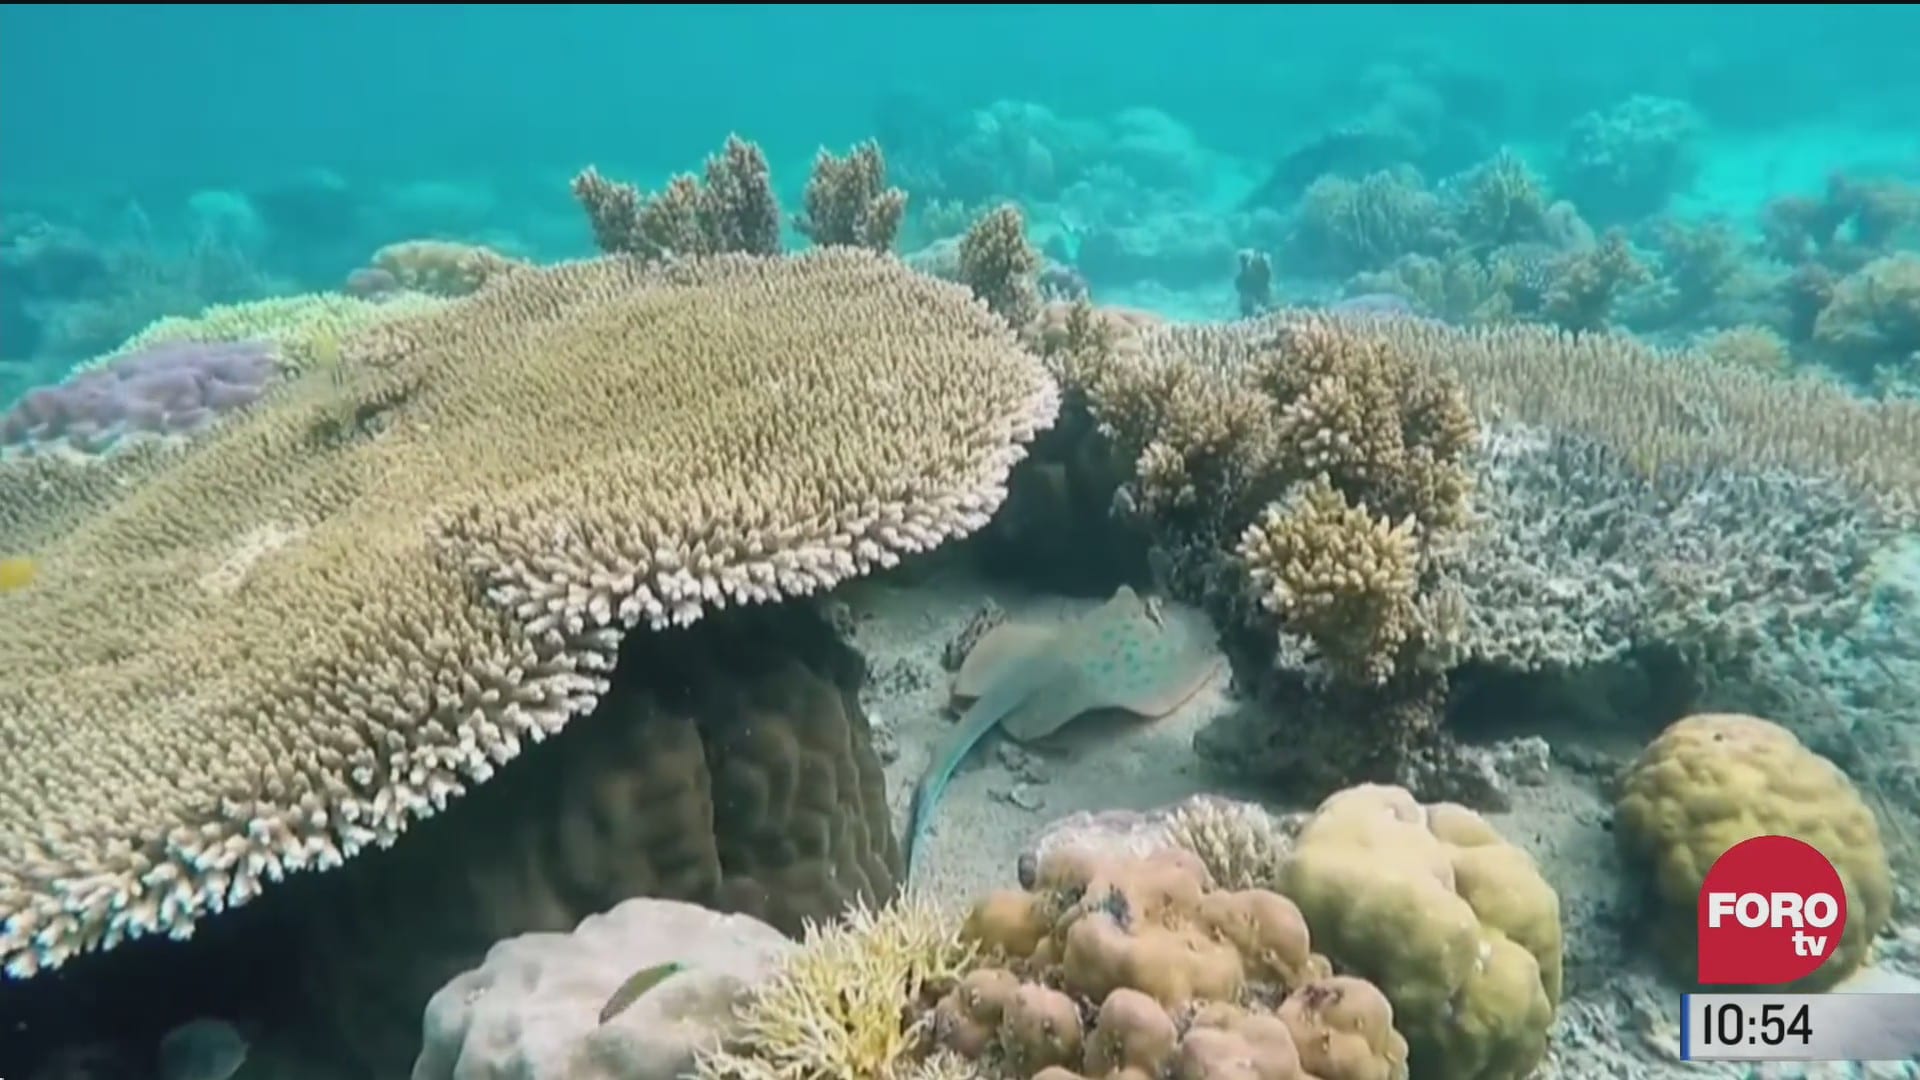 pepenando basura calentamiento de los oceanos amenazan a los arrecifes de coral